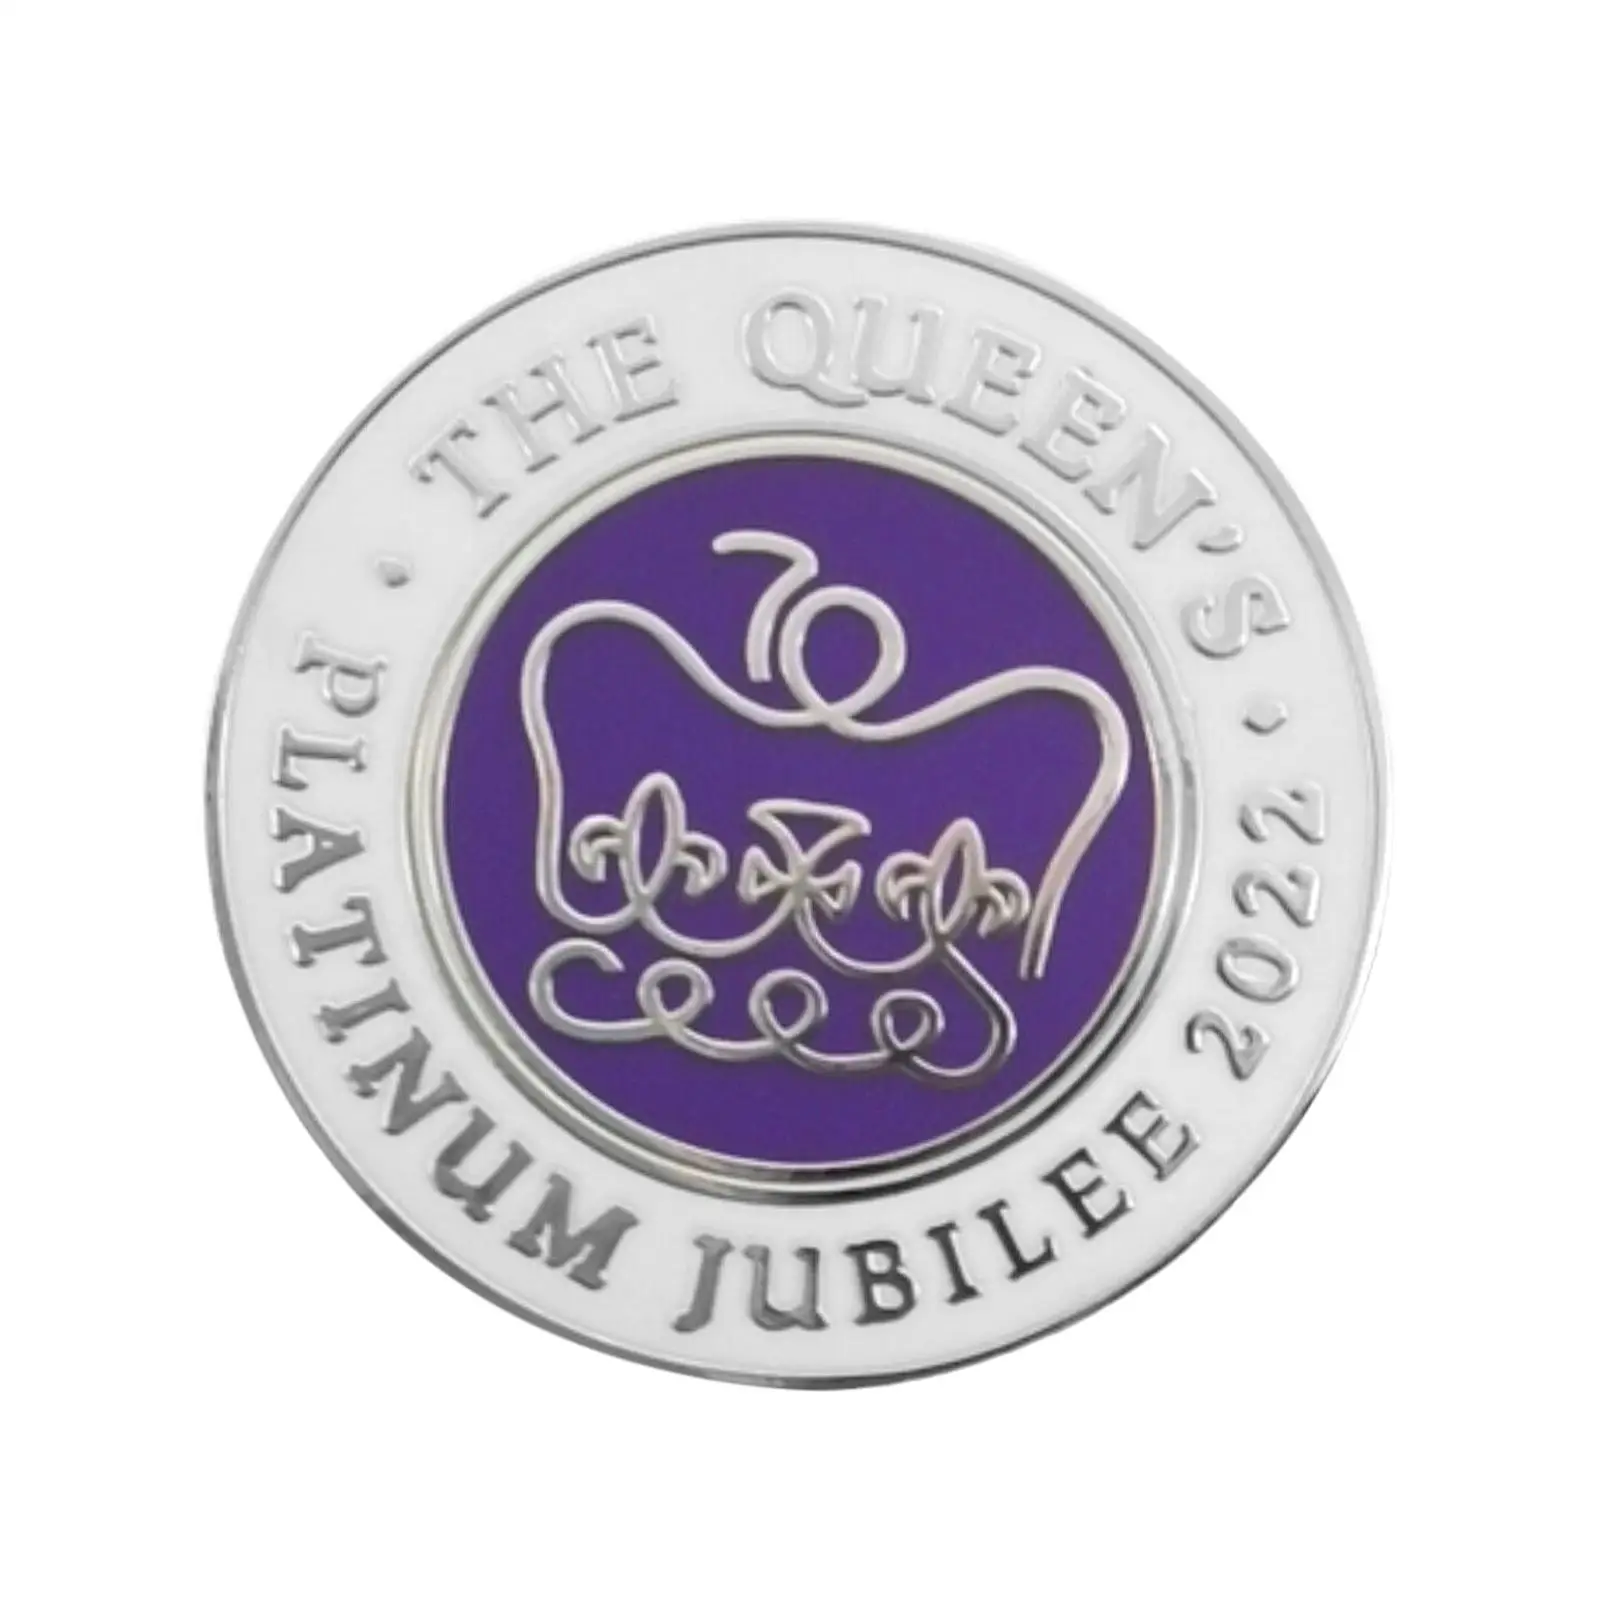 

2022 Юбилейная платиновая королевская сувенирная металлическая брошь-значок QUEEN'S